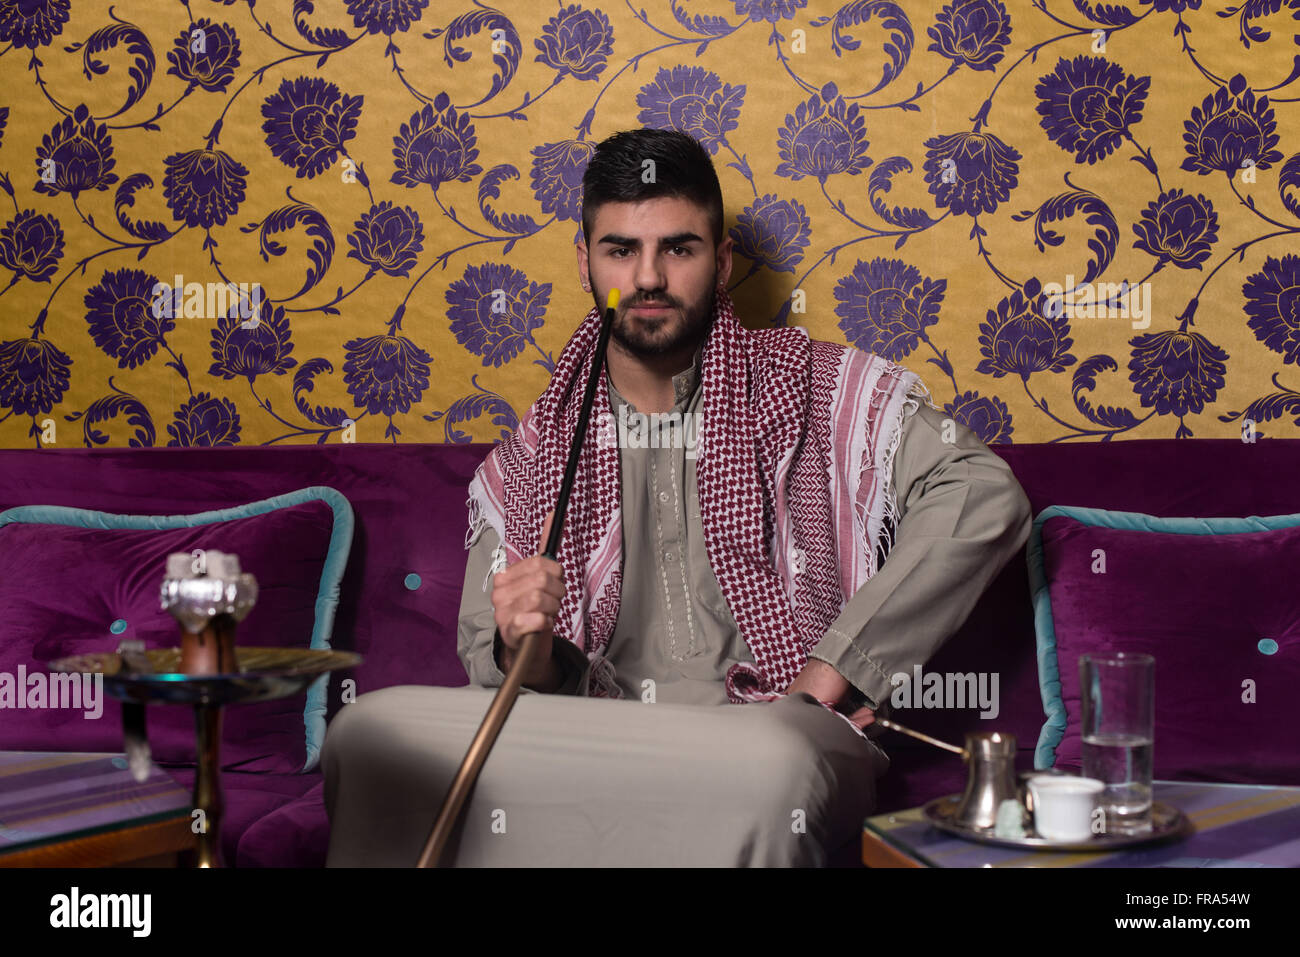 Arab man smoking shisha on hi-res stock photography and images - Alamy